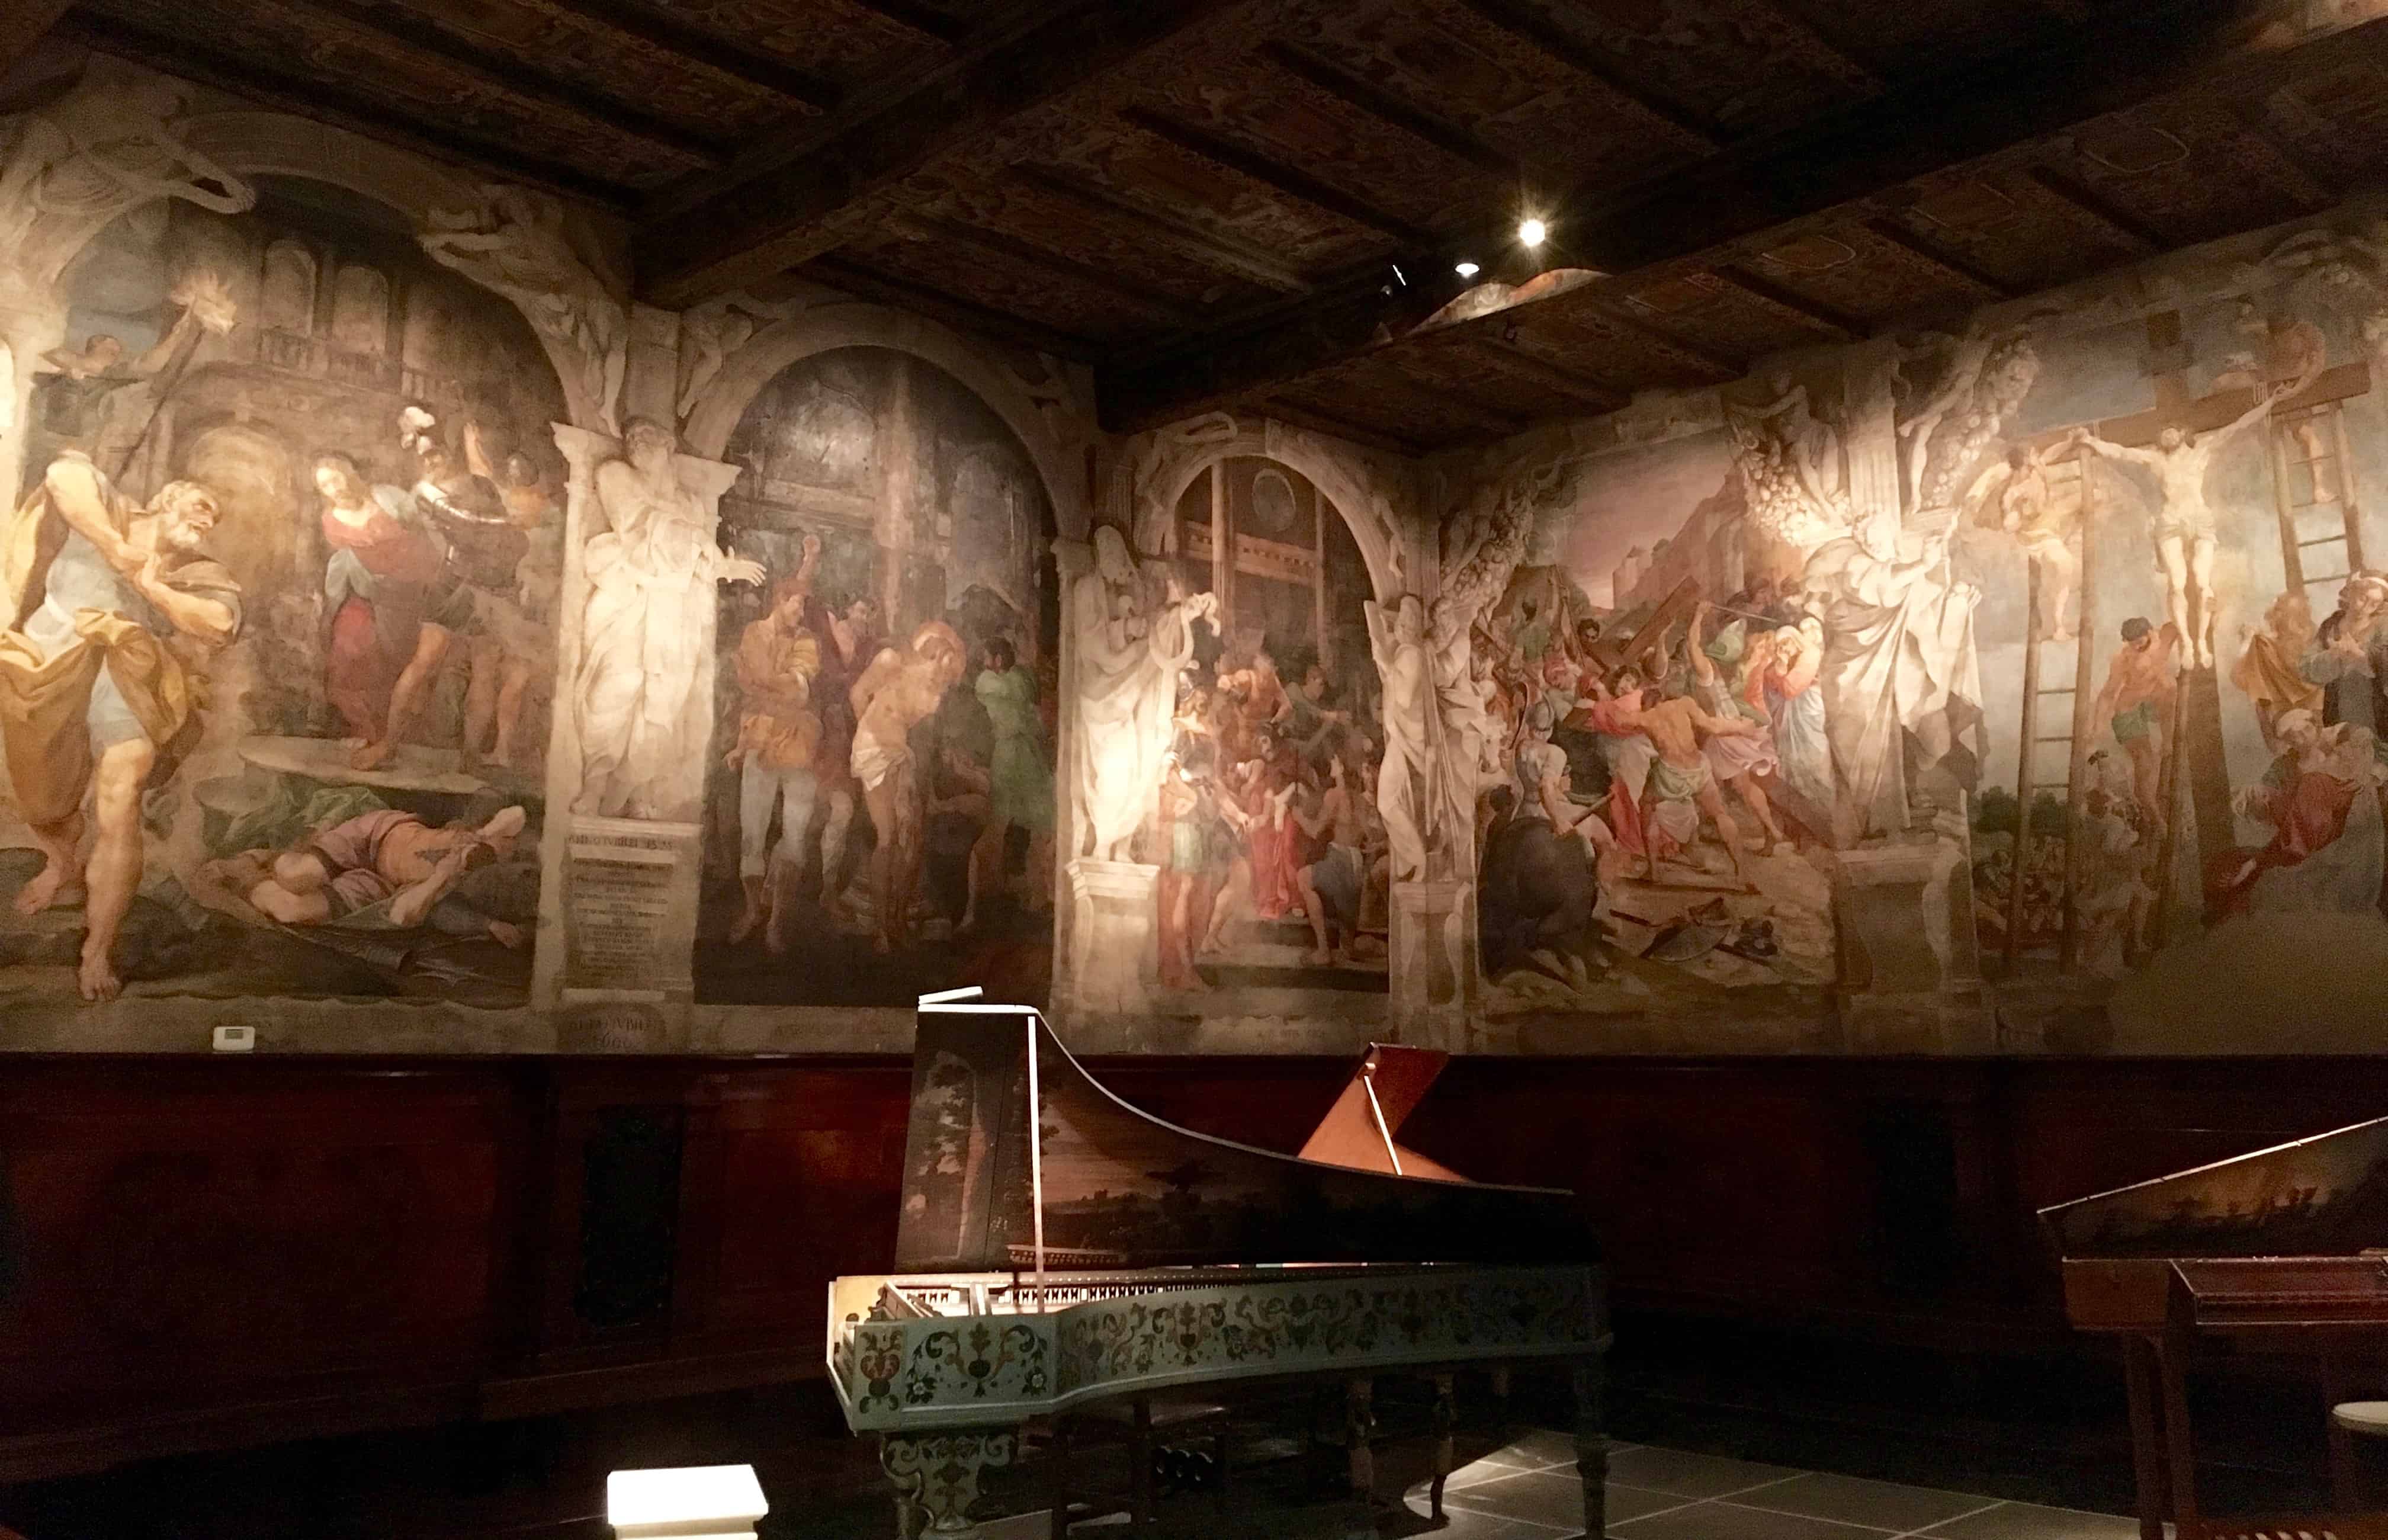 Breath-taking frescoes adorn the walls of the oratorio di San Colombano, Bologna, Italy